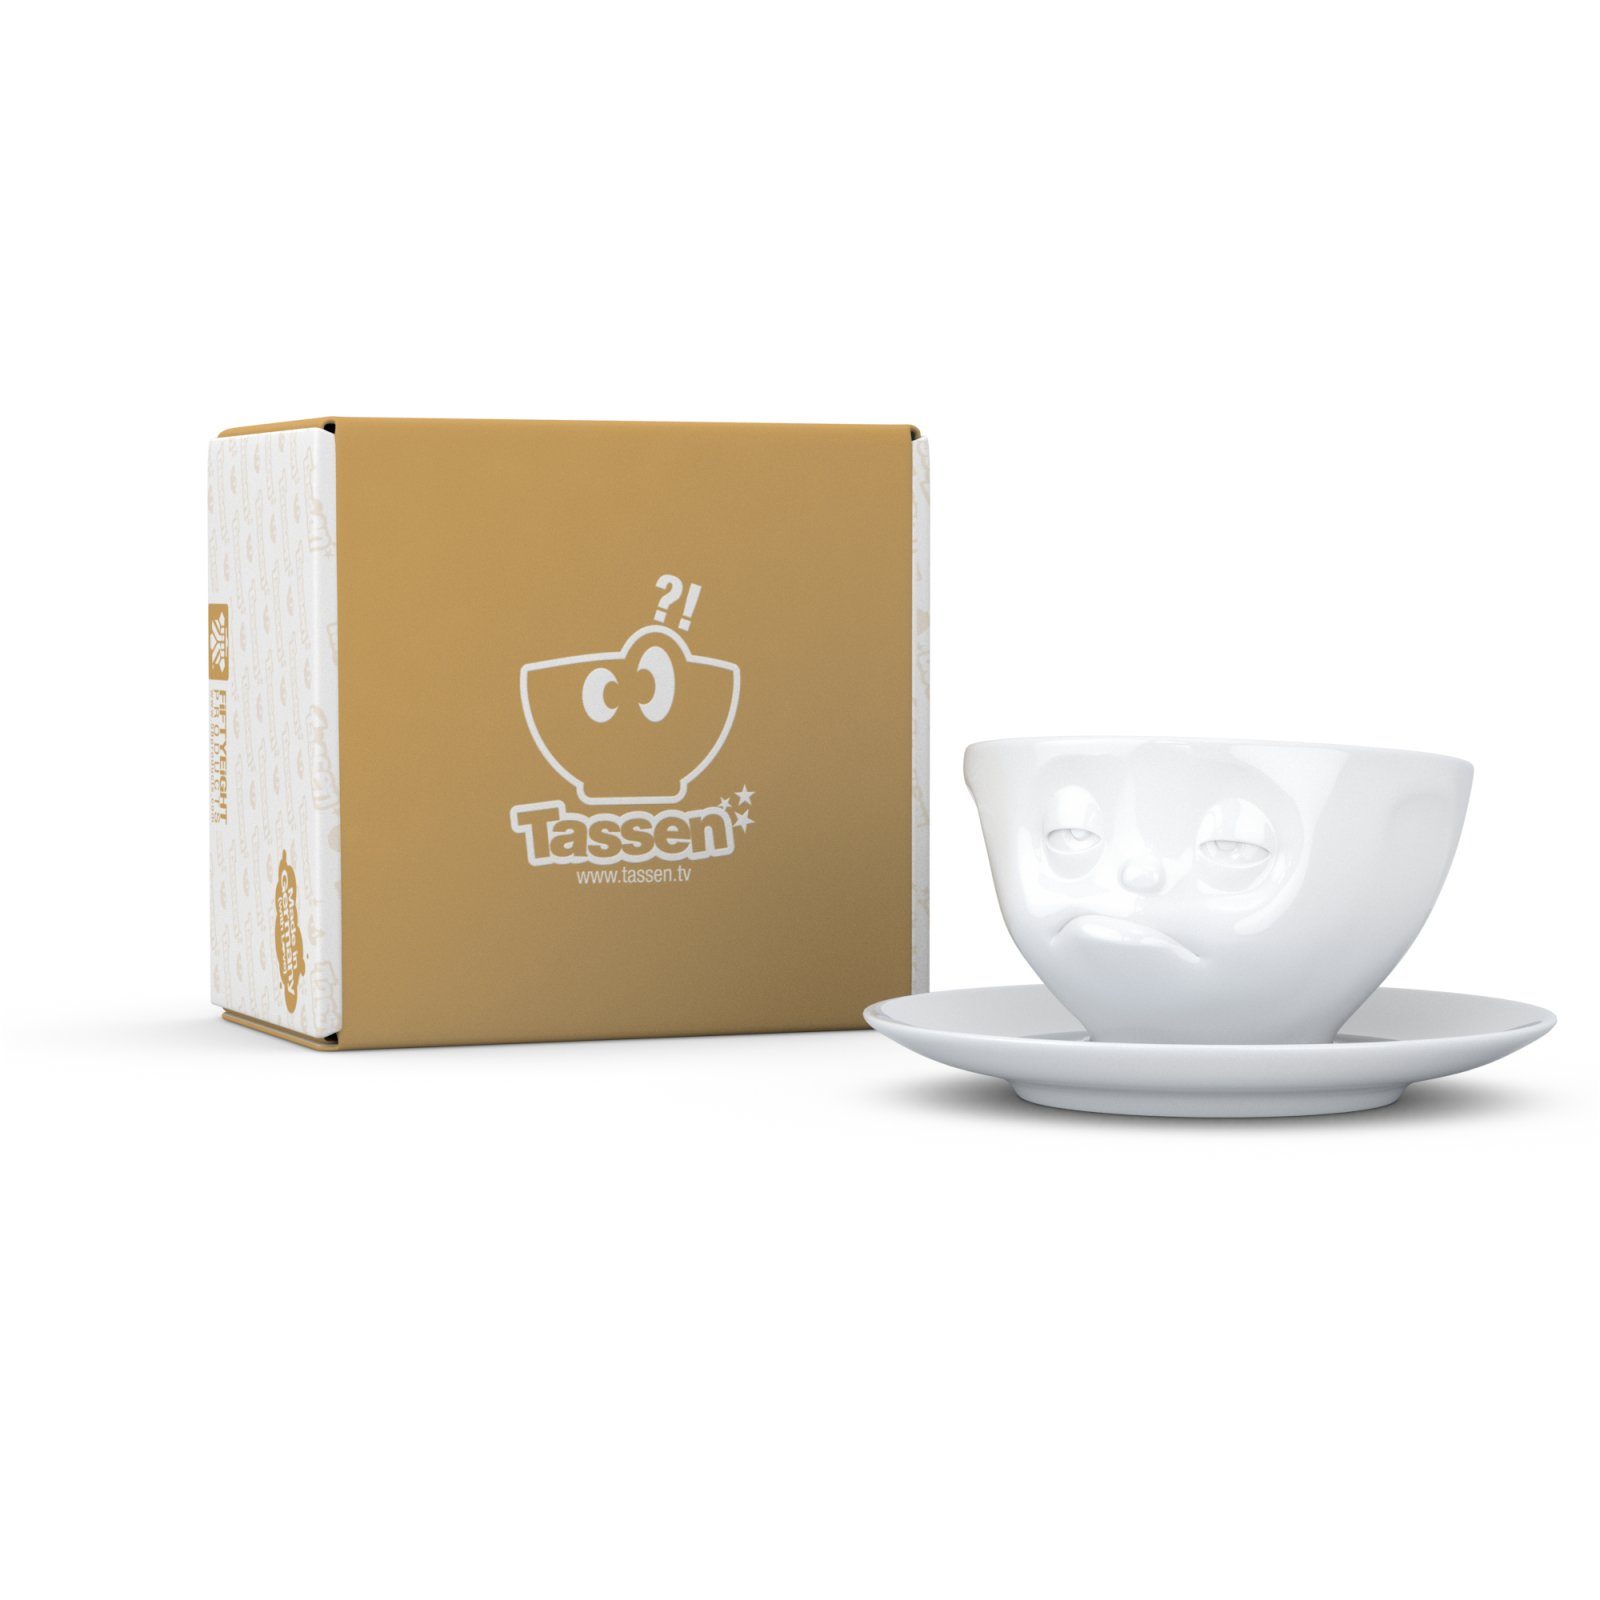 FIFTYEIGHT PRODUCTS Tasse Tasse Verpennt weiß - 200 ml - Kaffeetasse Weiß - 1 Stück